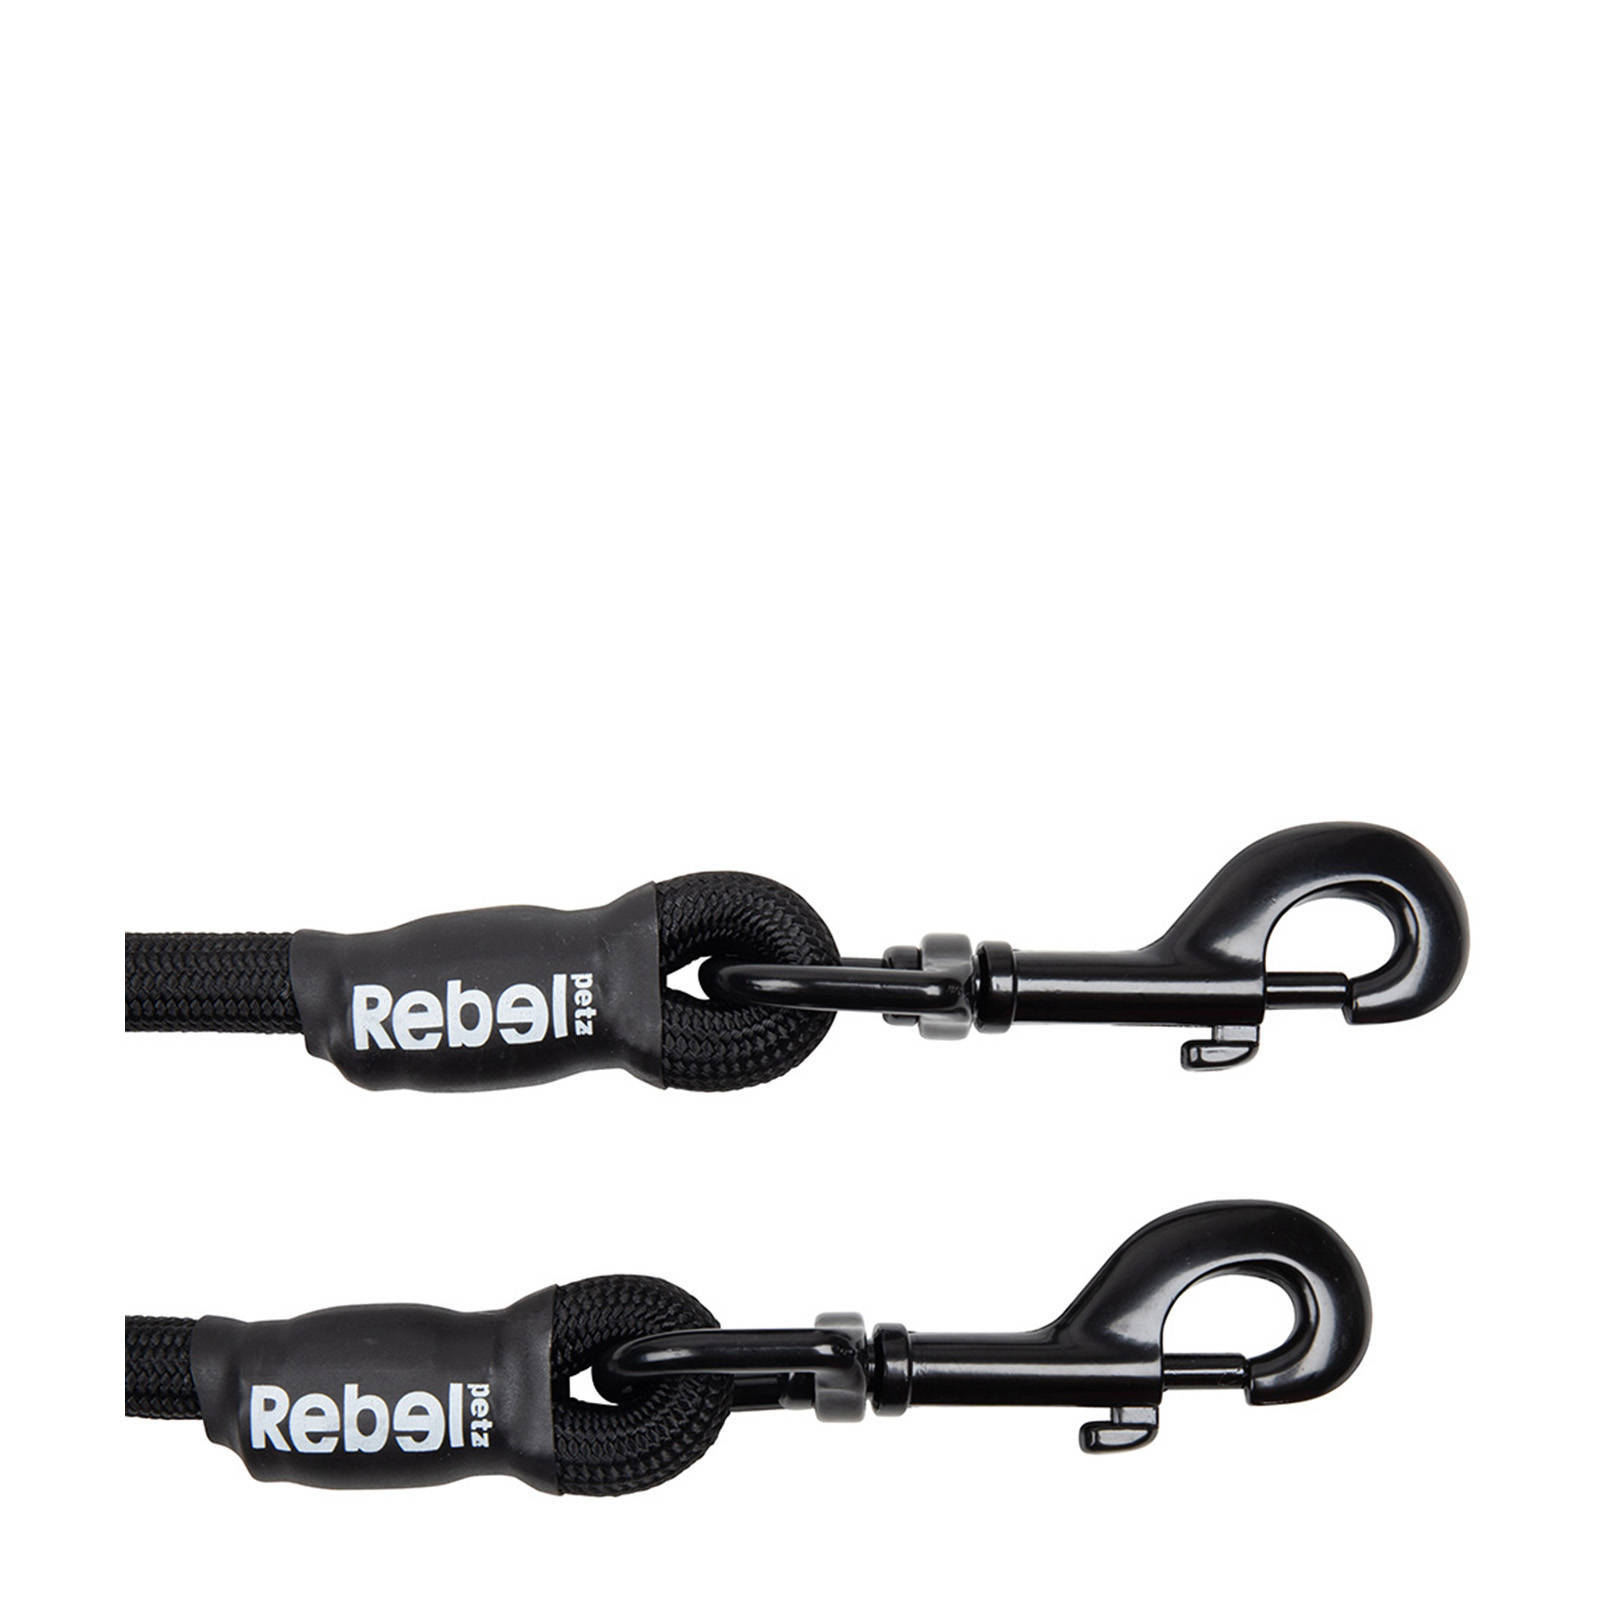 Rebel Adjustable Dog Leash